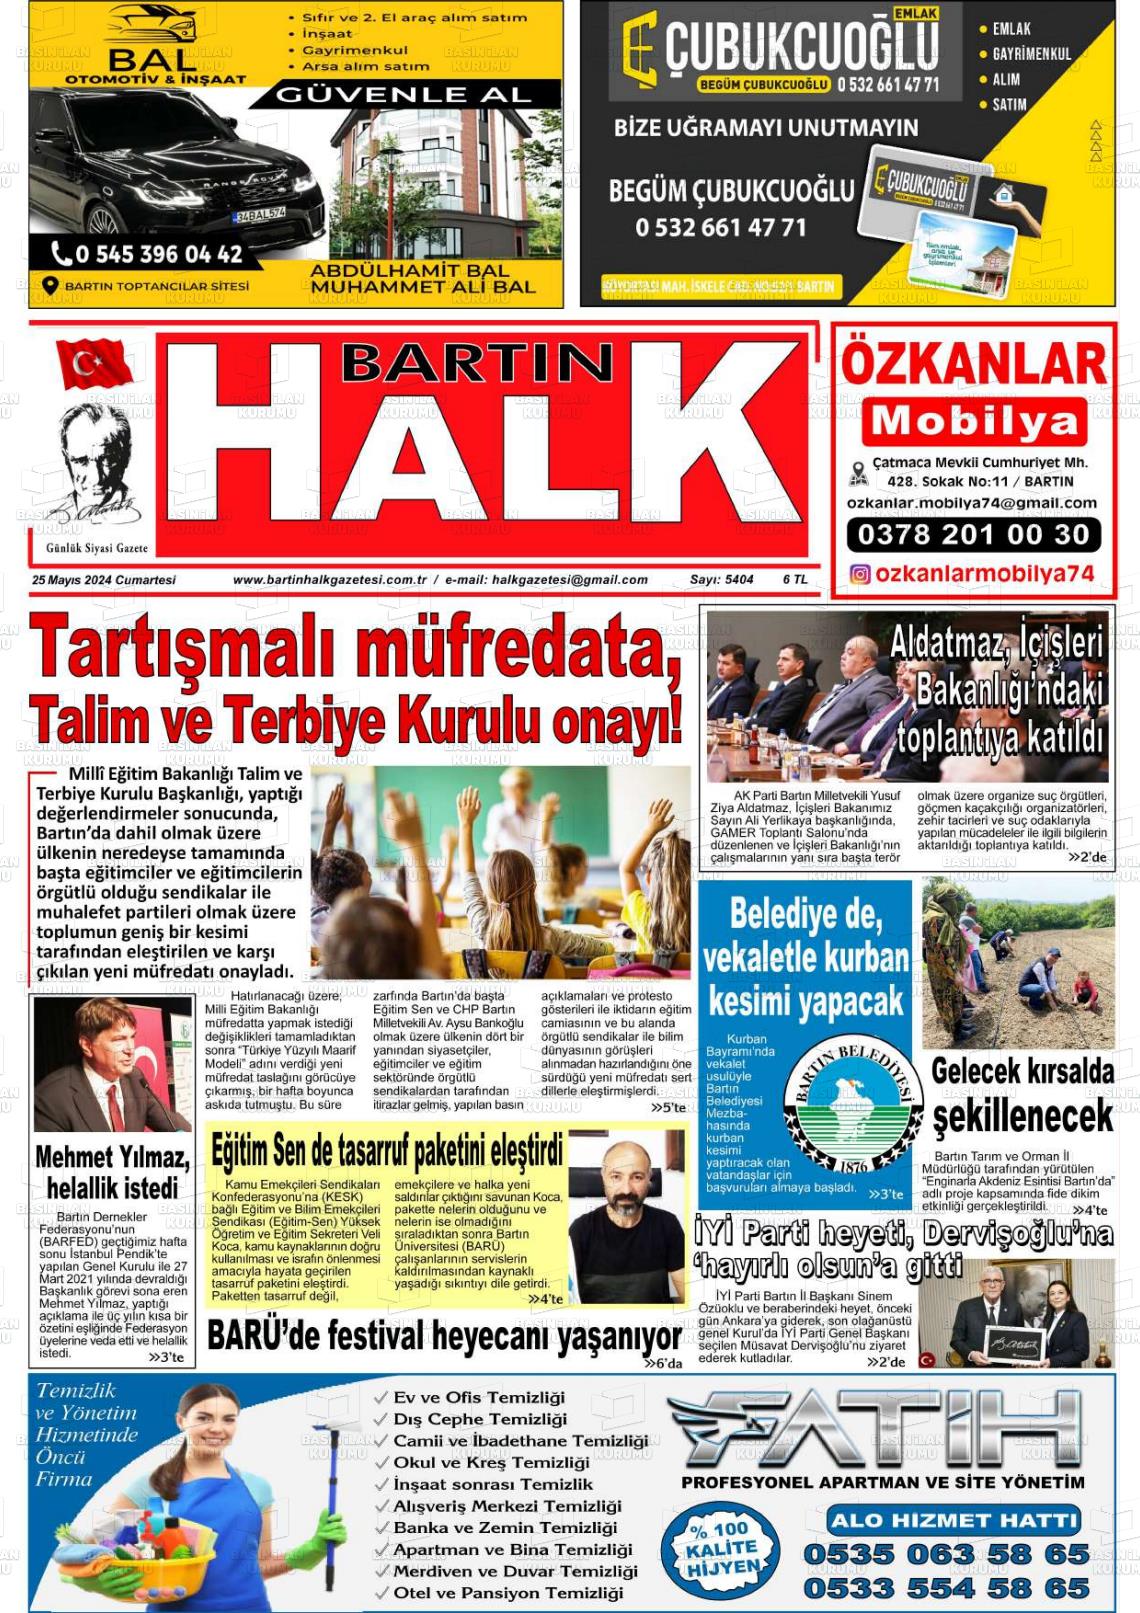 BARTIN HALK Gazetesi